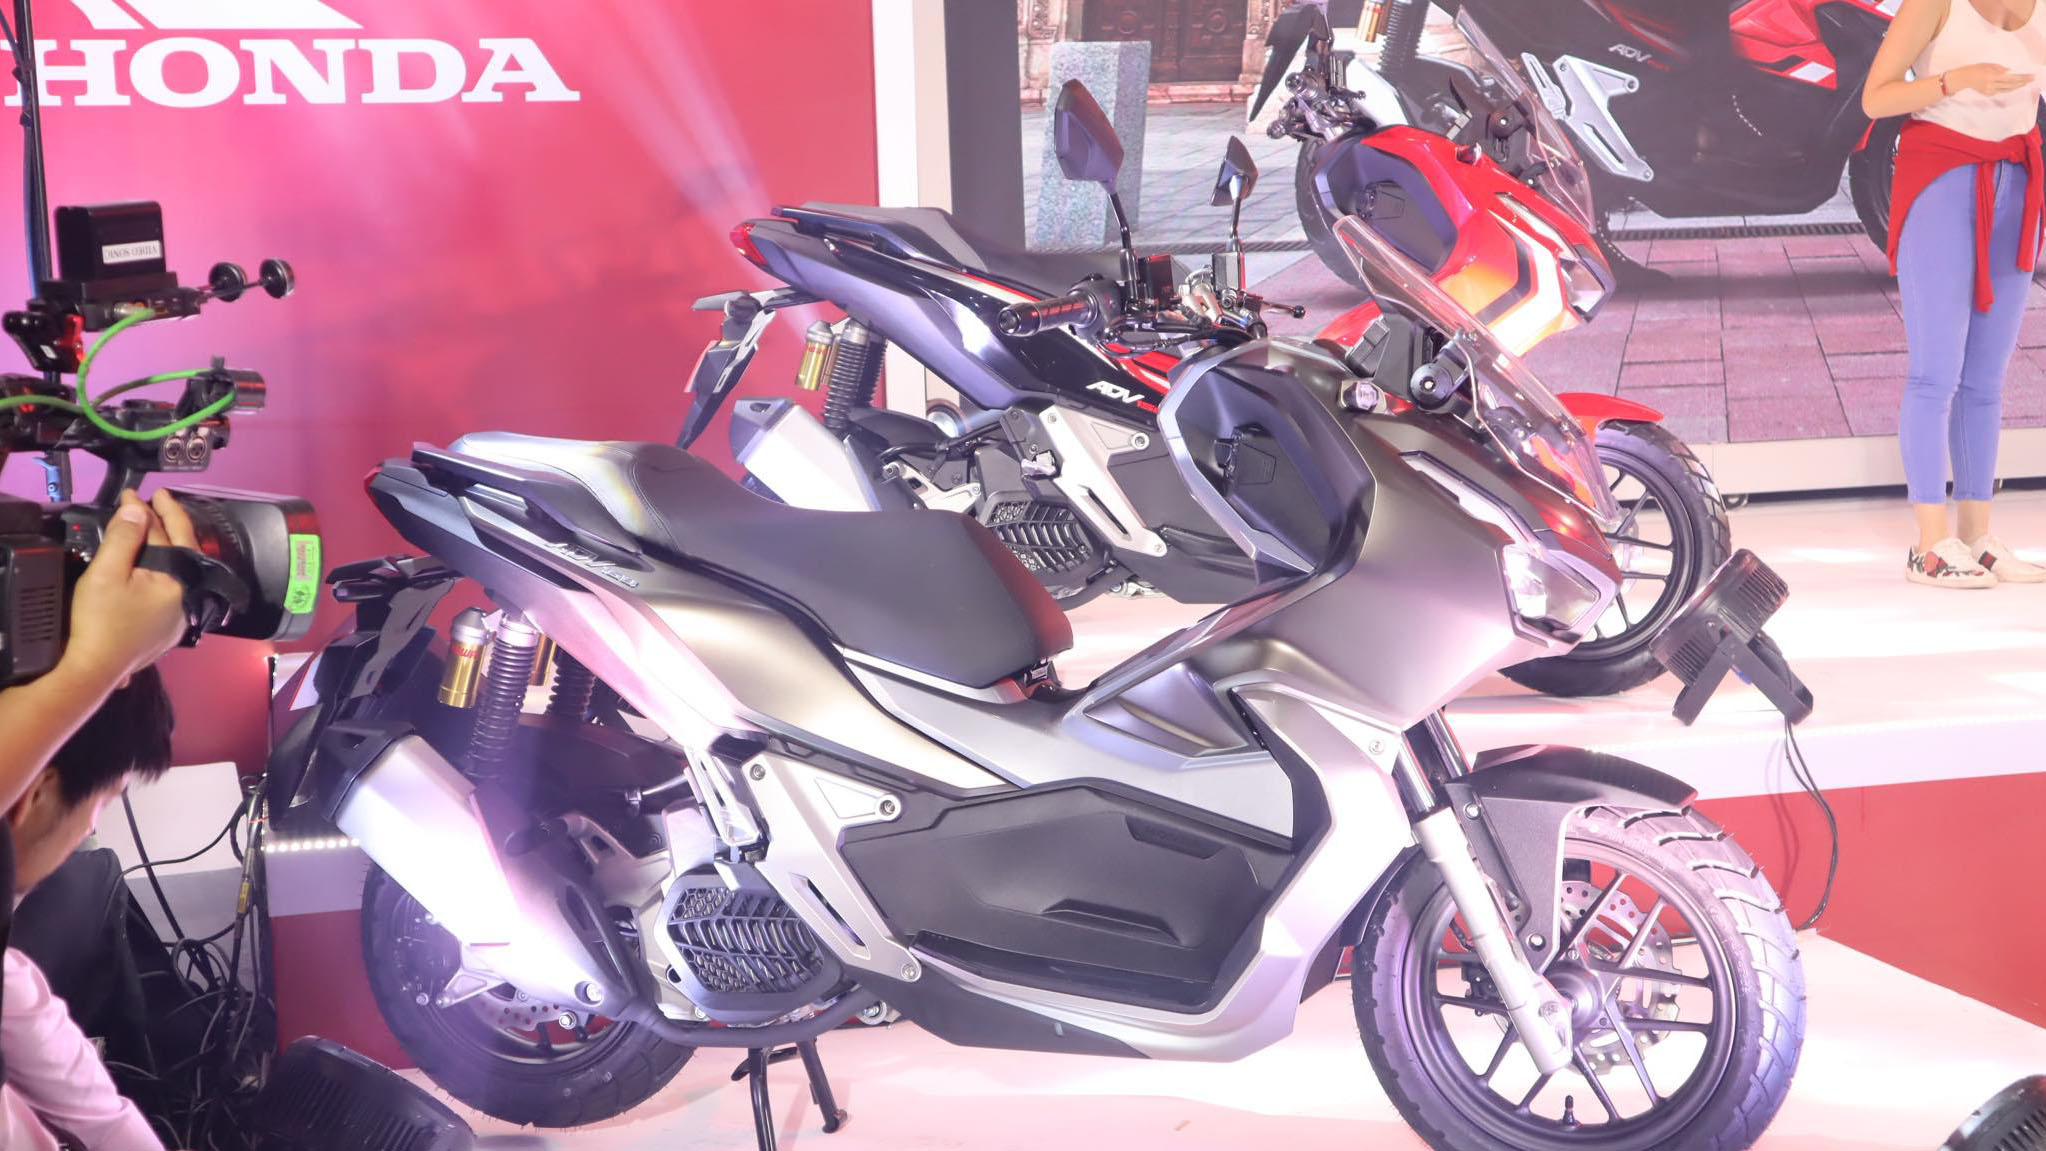 2020 Honda ADV 150: Price, Specs, Features, Photos, Event